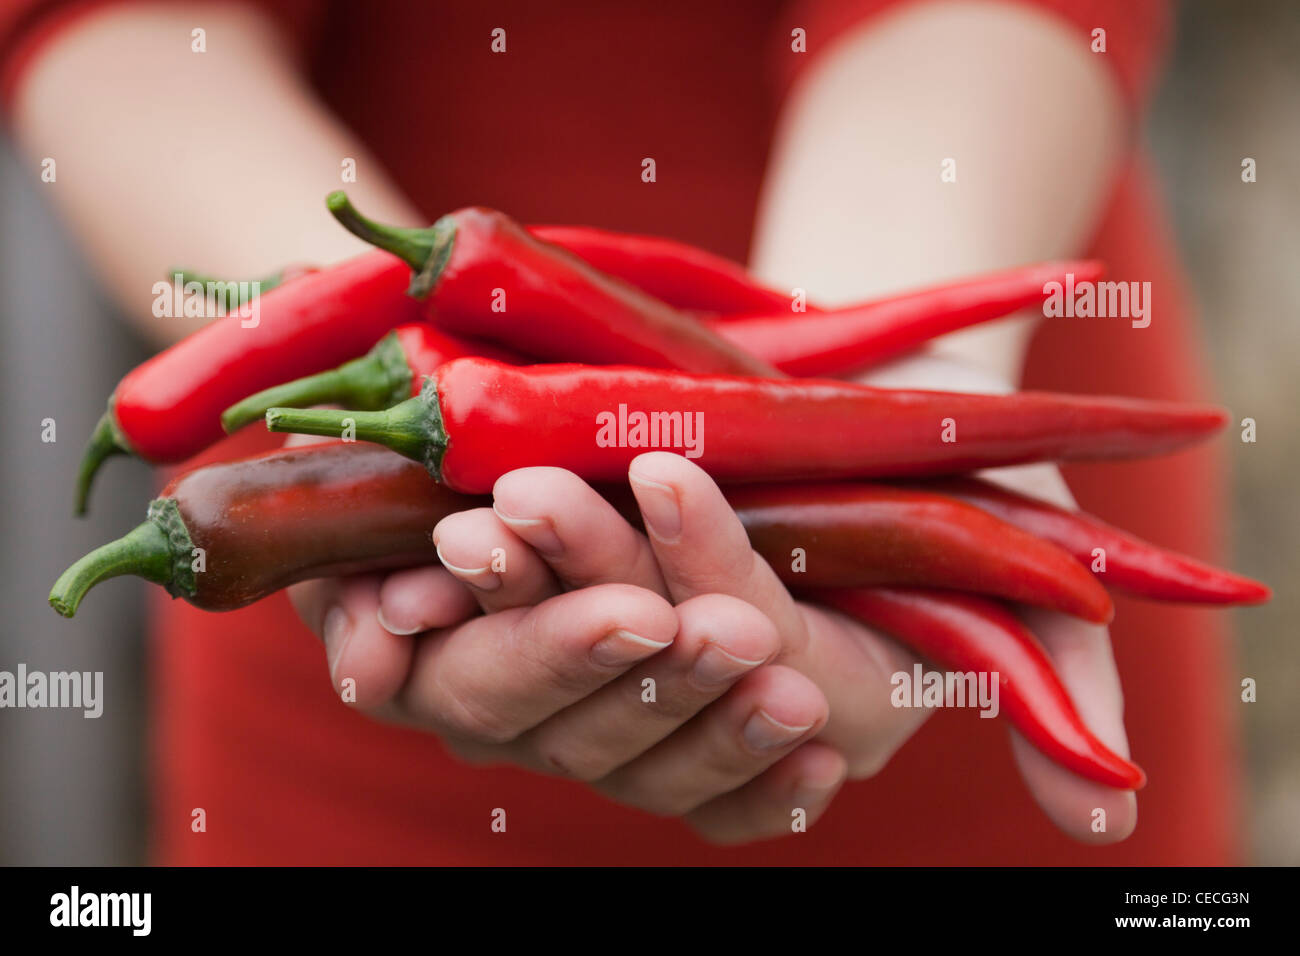 Persona in possesso di red hot chili peppers Foto Stock